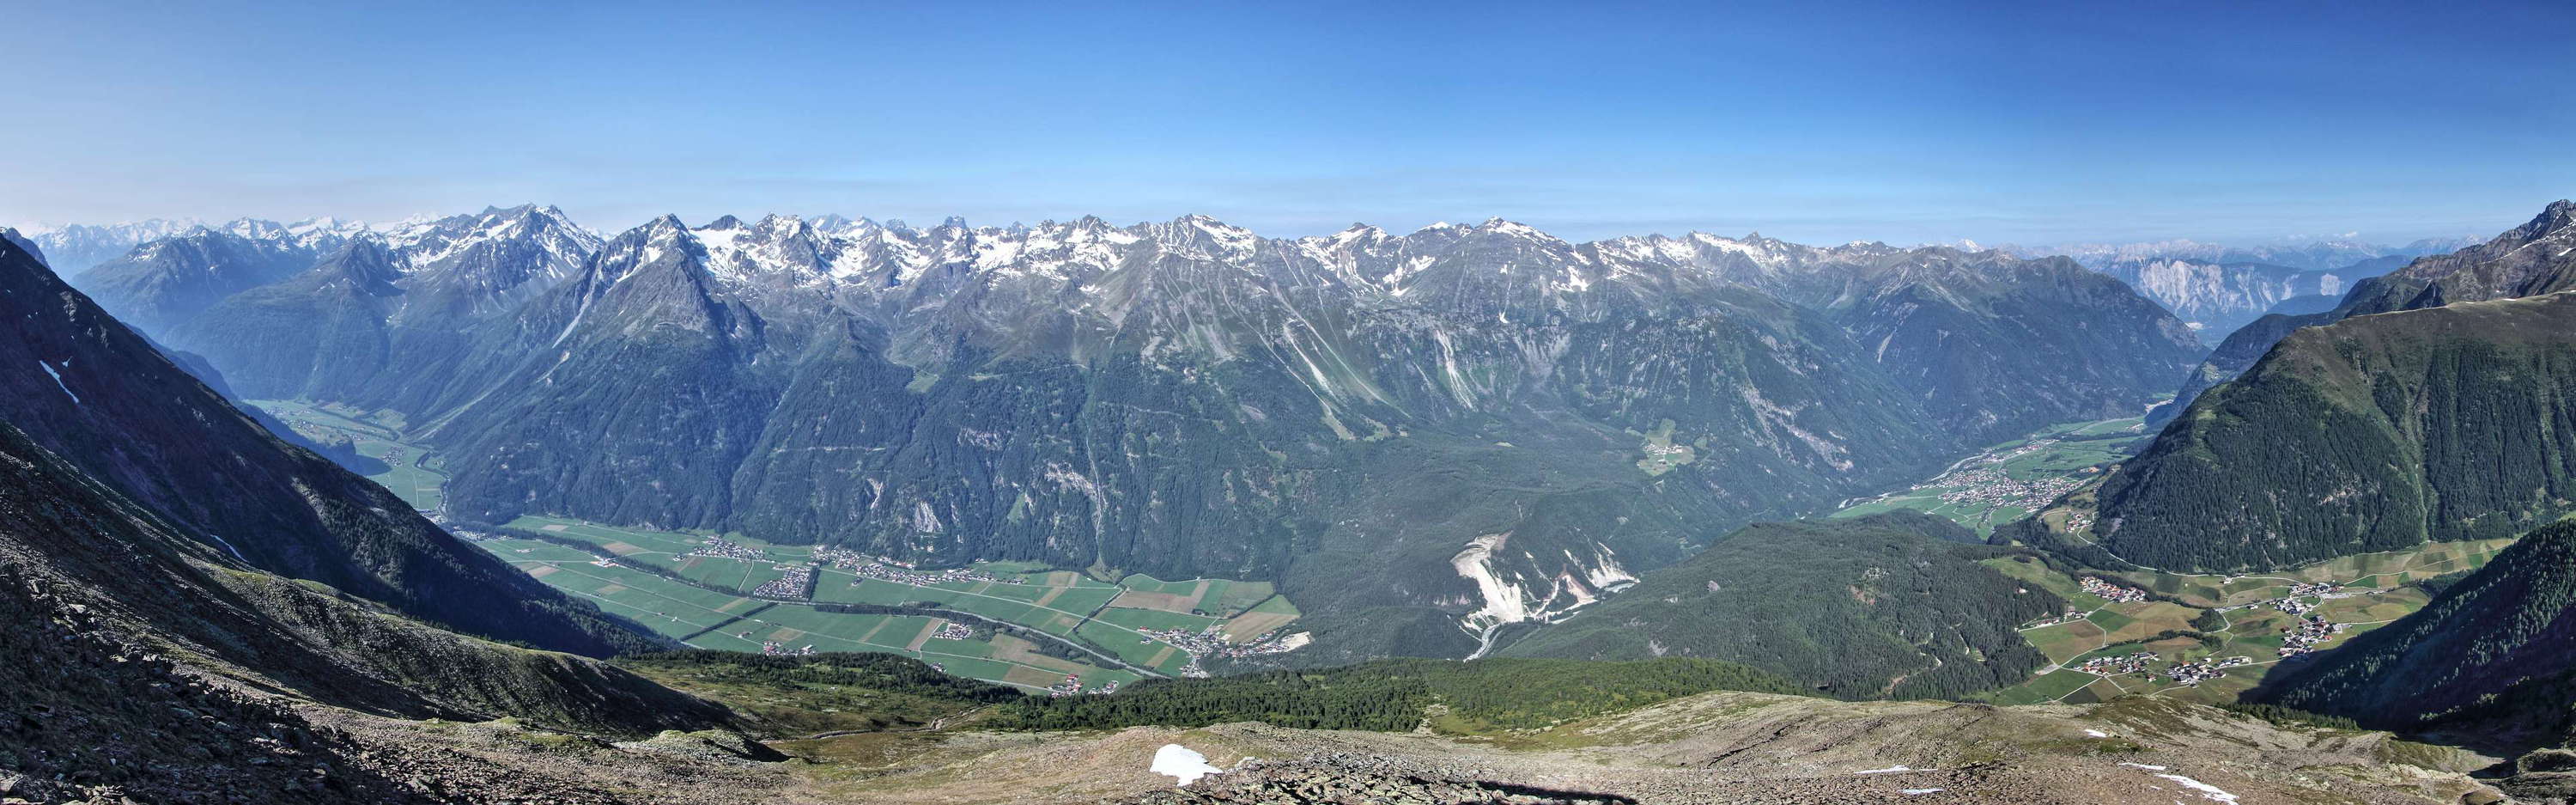 Ötztal panorama with Köfels Rock Slide